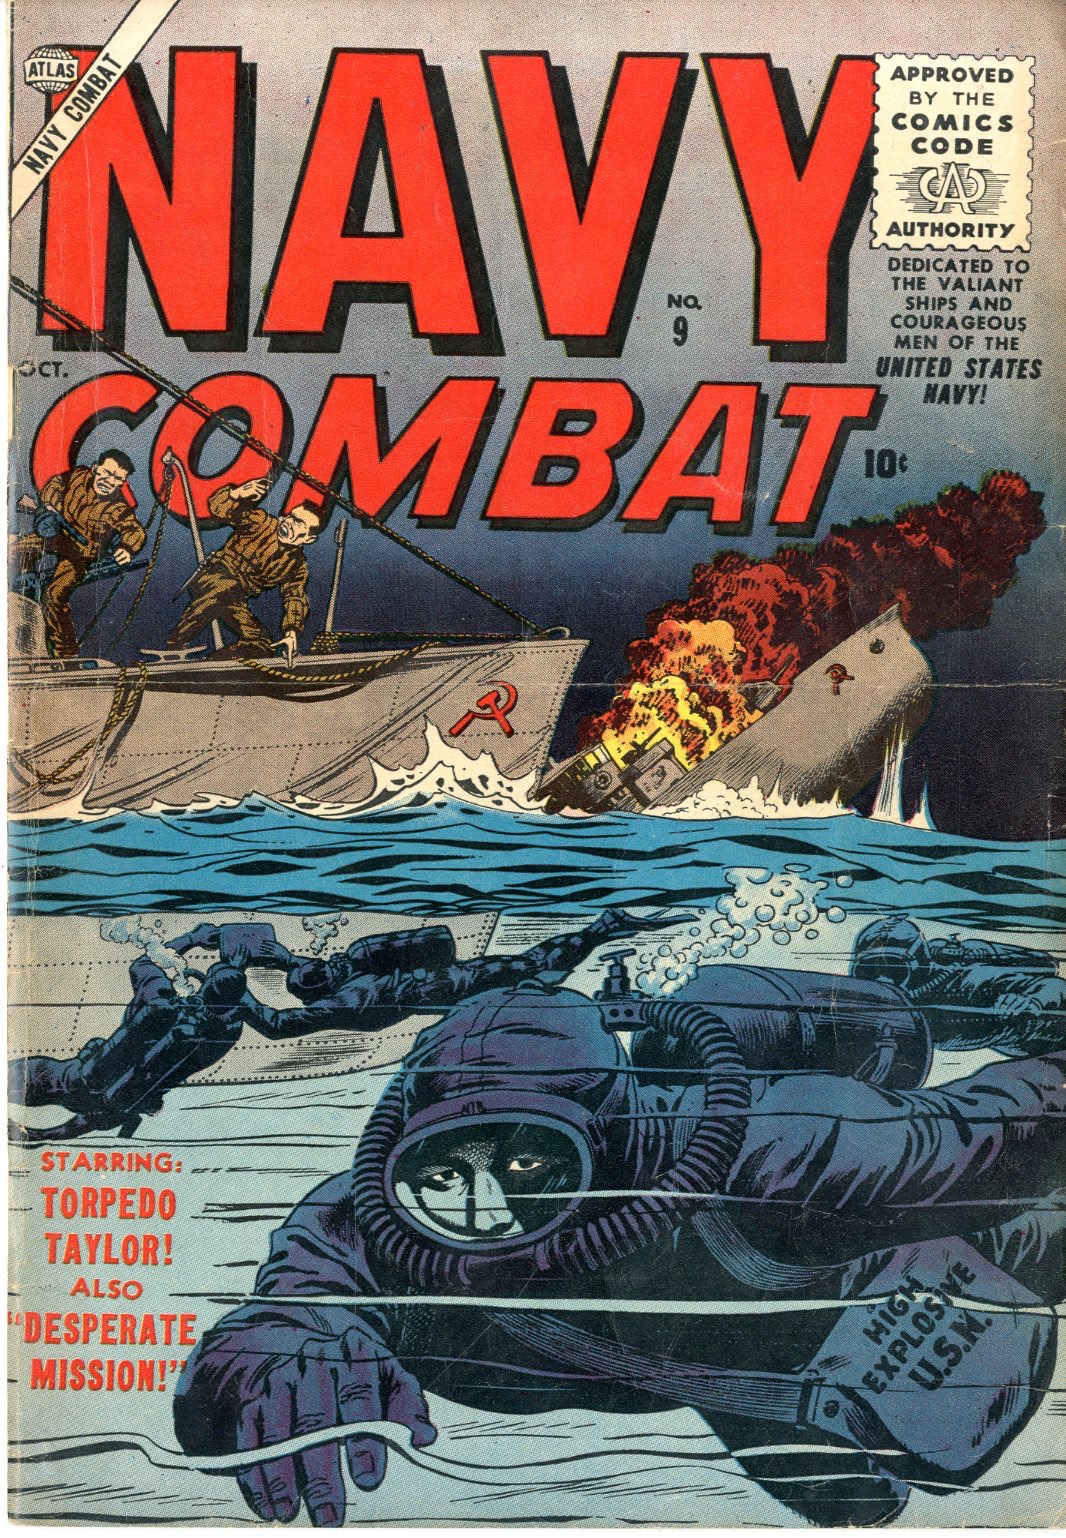 Navy Combat - Primary